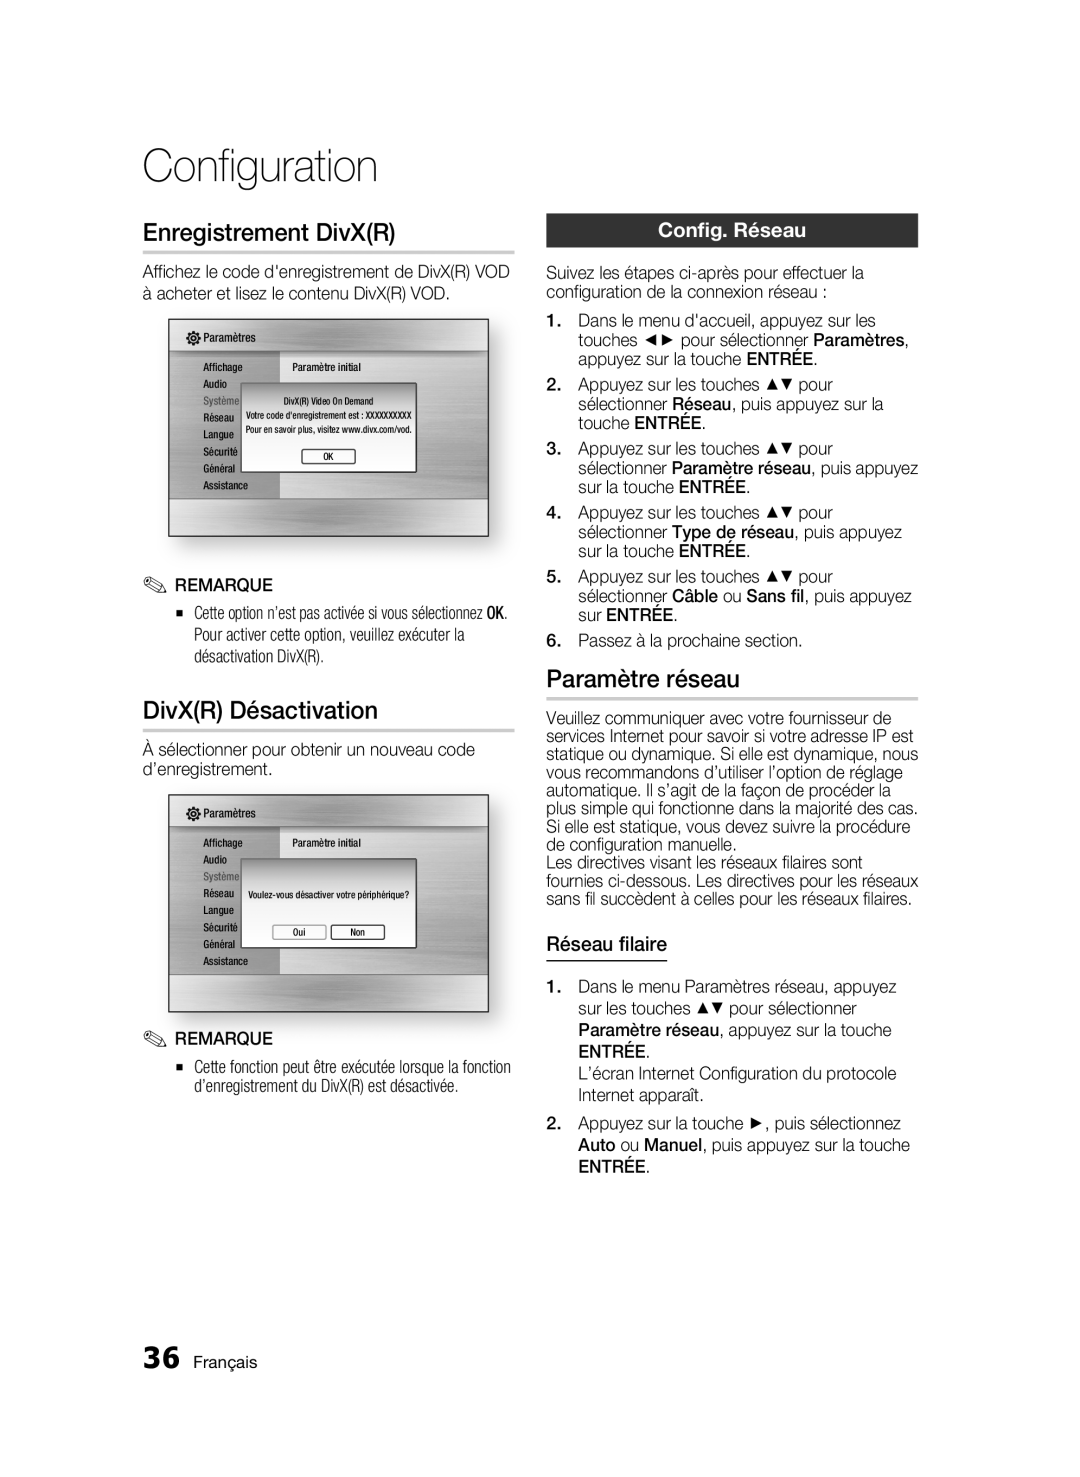 Samsung BD-C6300 user manual Enregistrement DivXR, DivXR Désactivation, Paramètre réseau, Config. Réseau, Réseau filaire 